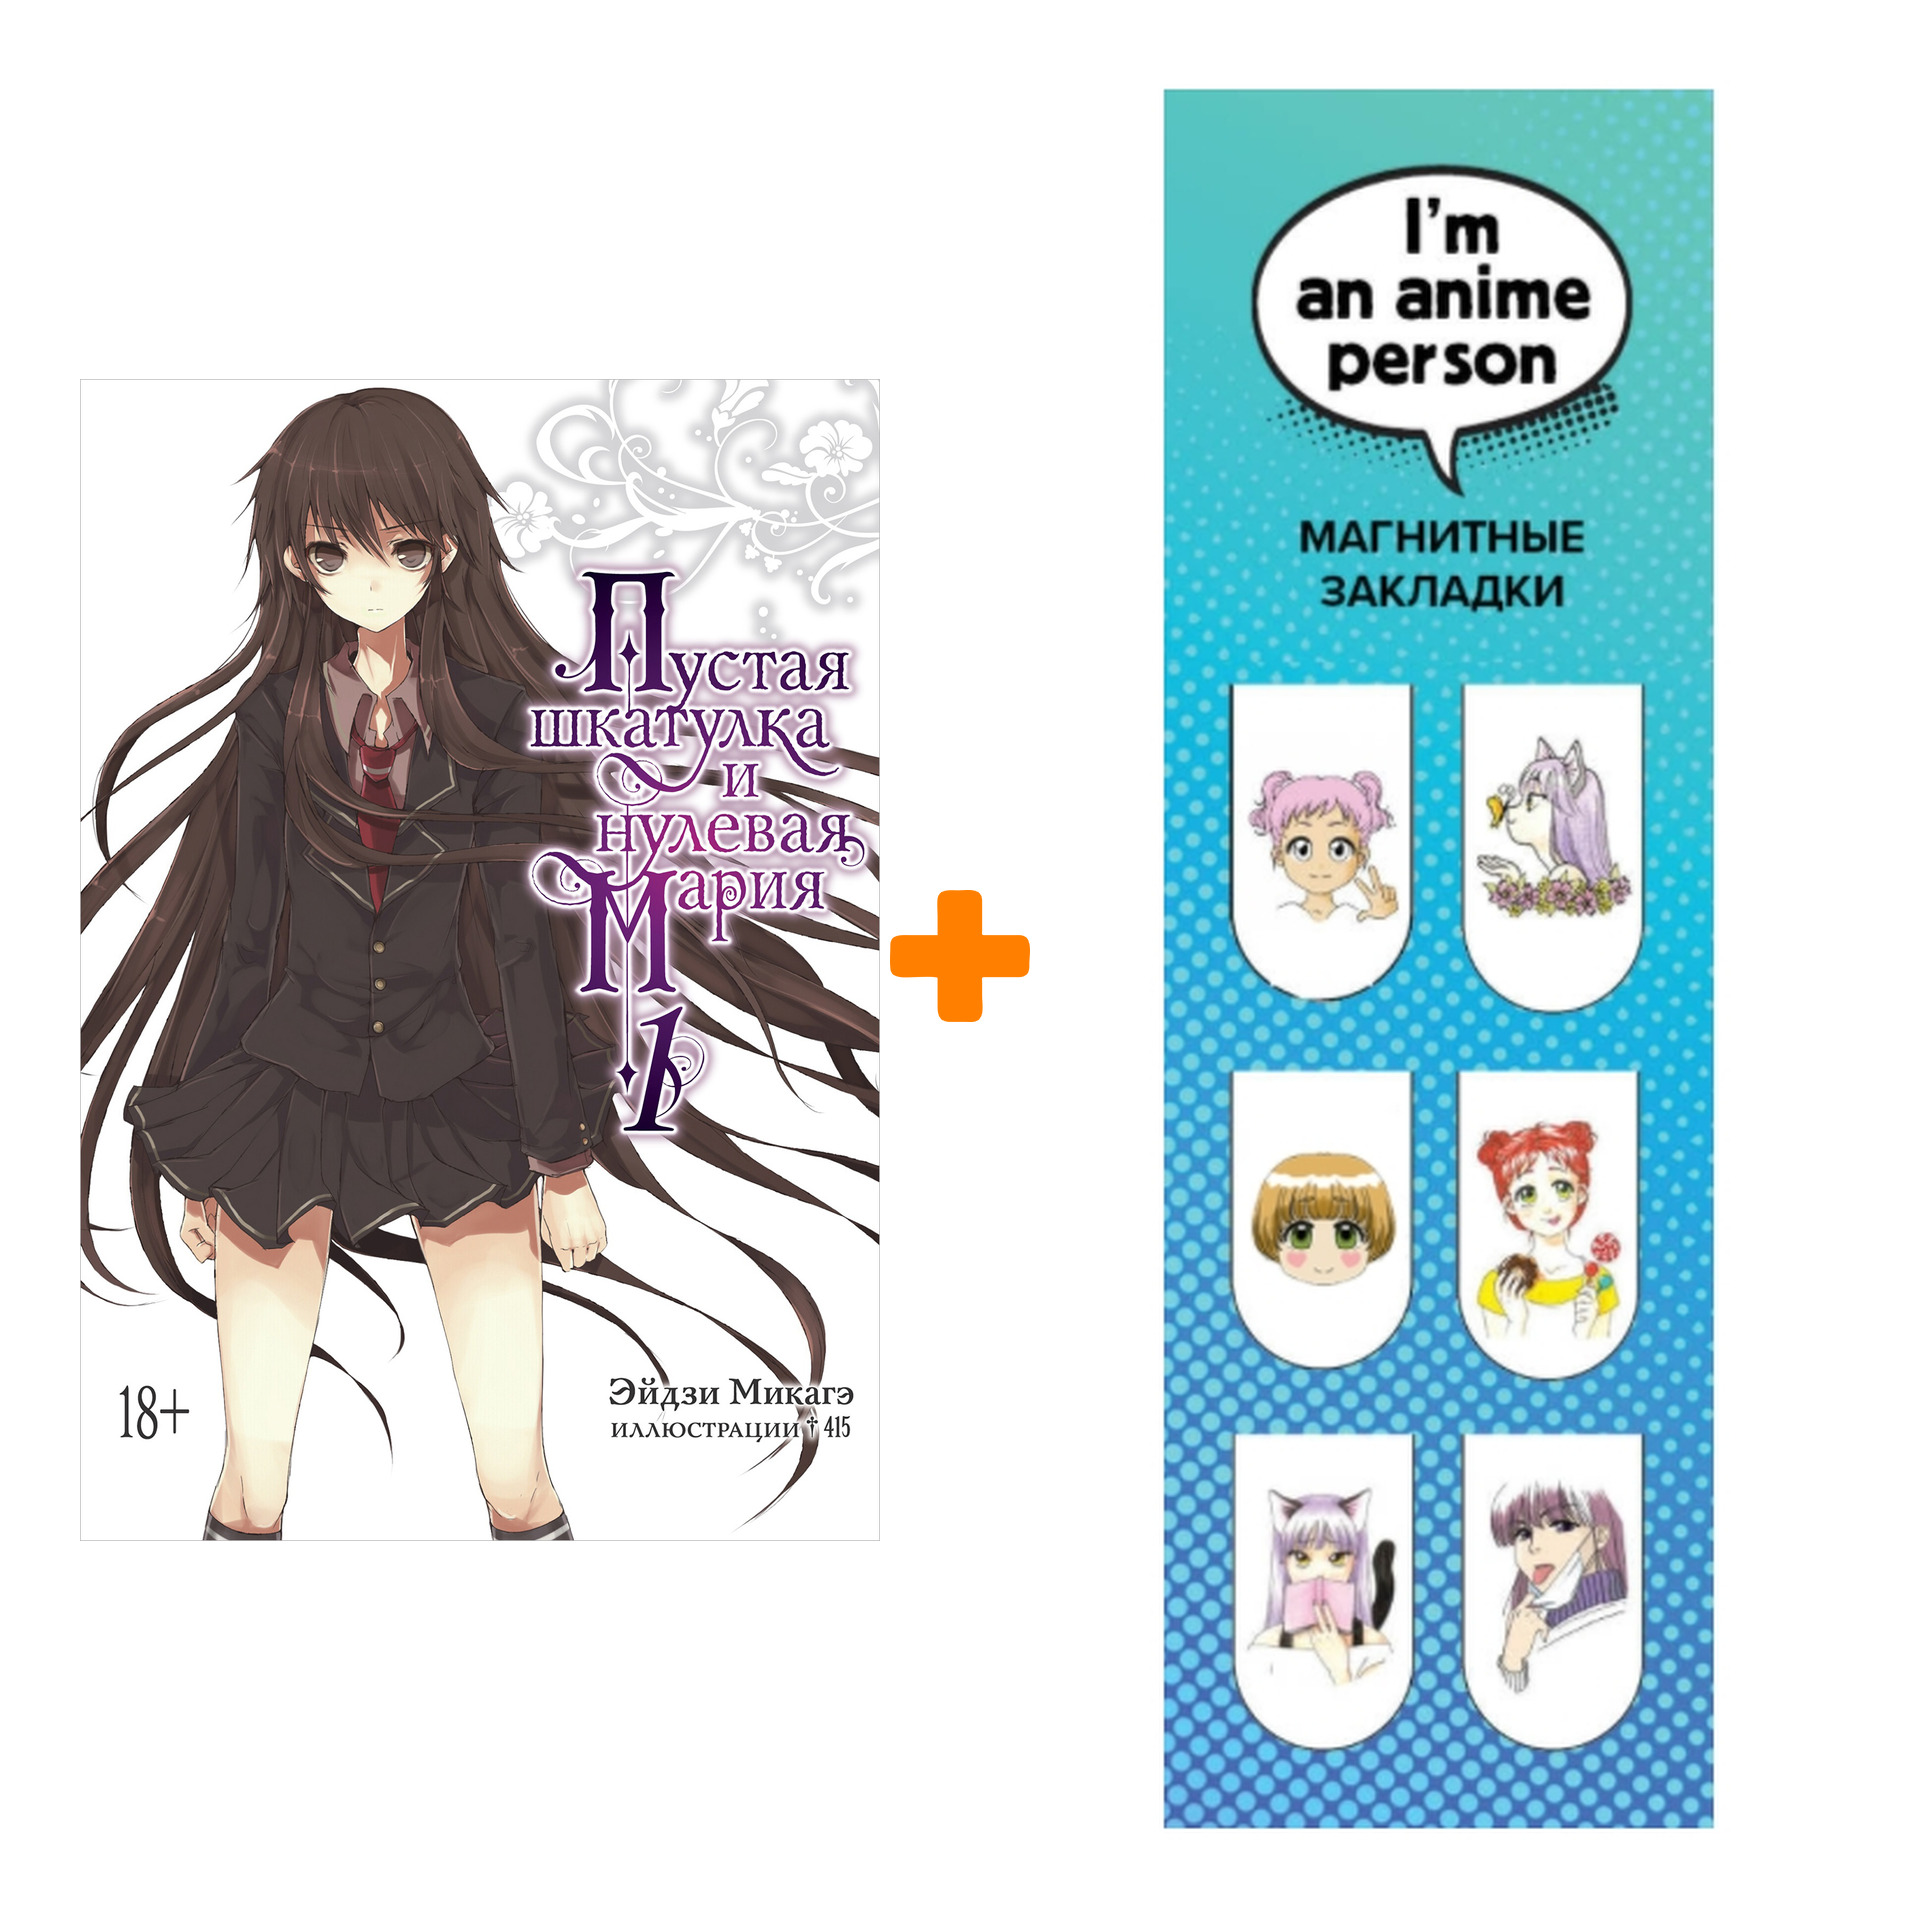 Набор Ранобэ Пустая шкатулка и нулевая Мария. Кн. 1 + Закладка I`m An Anime Person магнитная 6-Pack